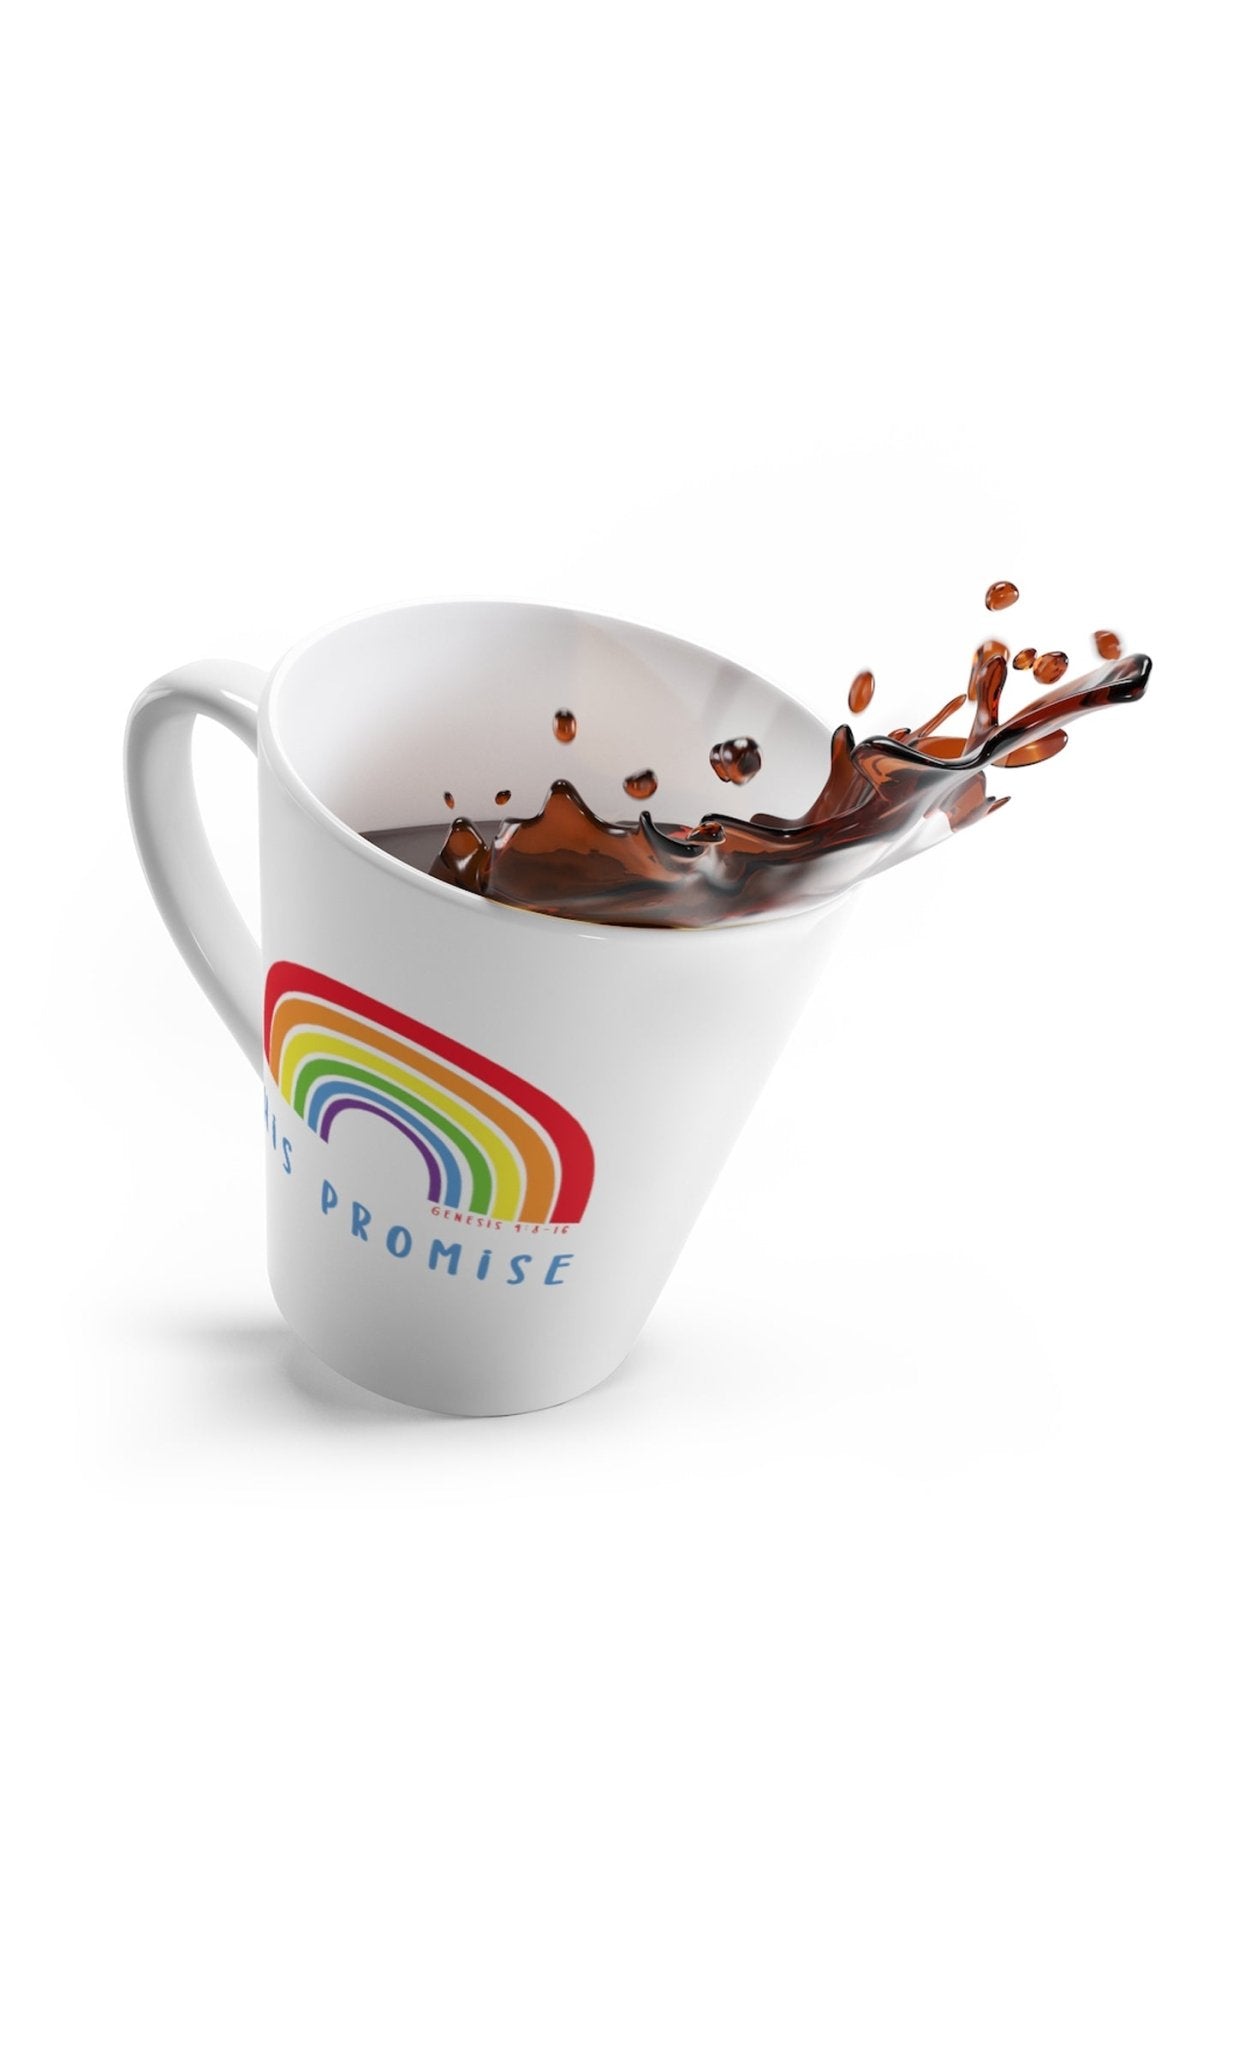 Trini-T - His Promise - Latte Mug 12oz - Trini-T Ministries